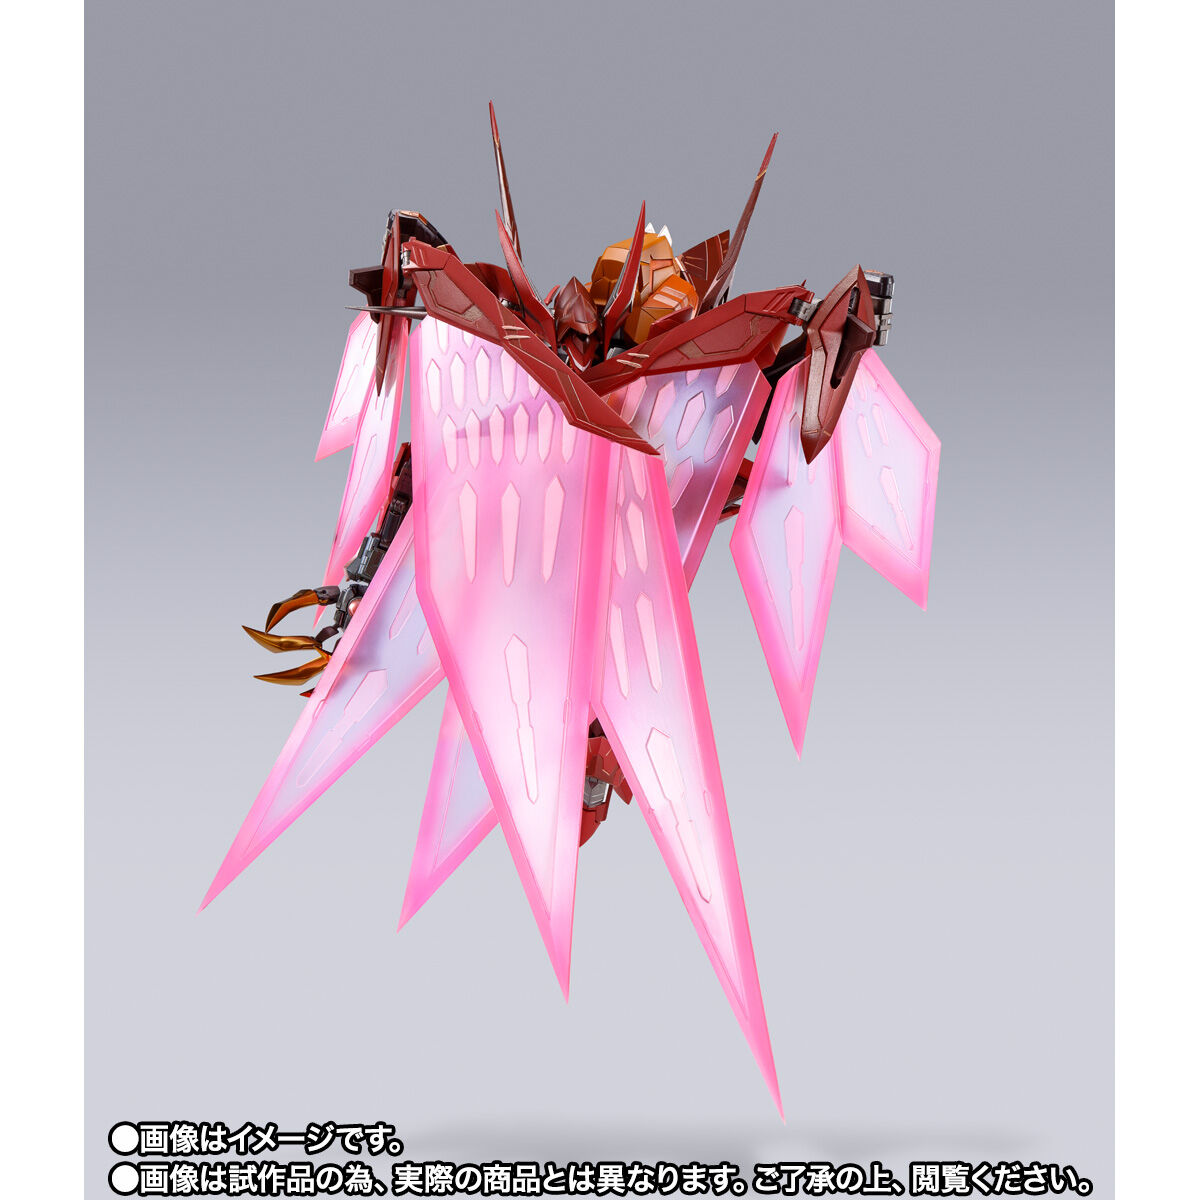 【限定販売】METAL BUILD DRAGON SCALE『紅蓮聖天八極式』コードギアス 反逆のルルーシュR2 可動フィギュア-006